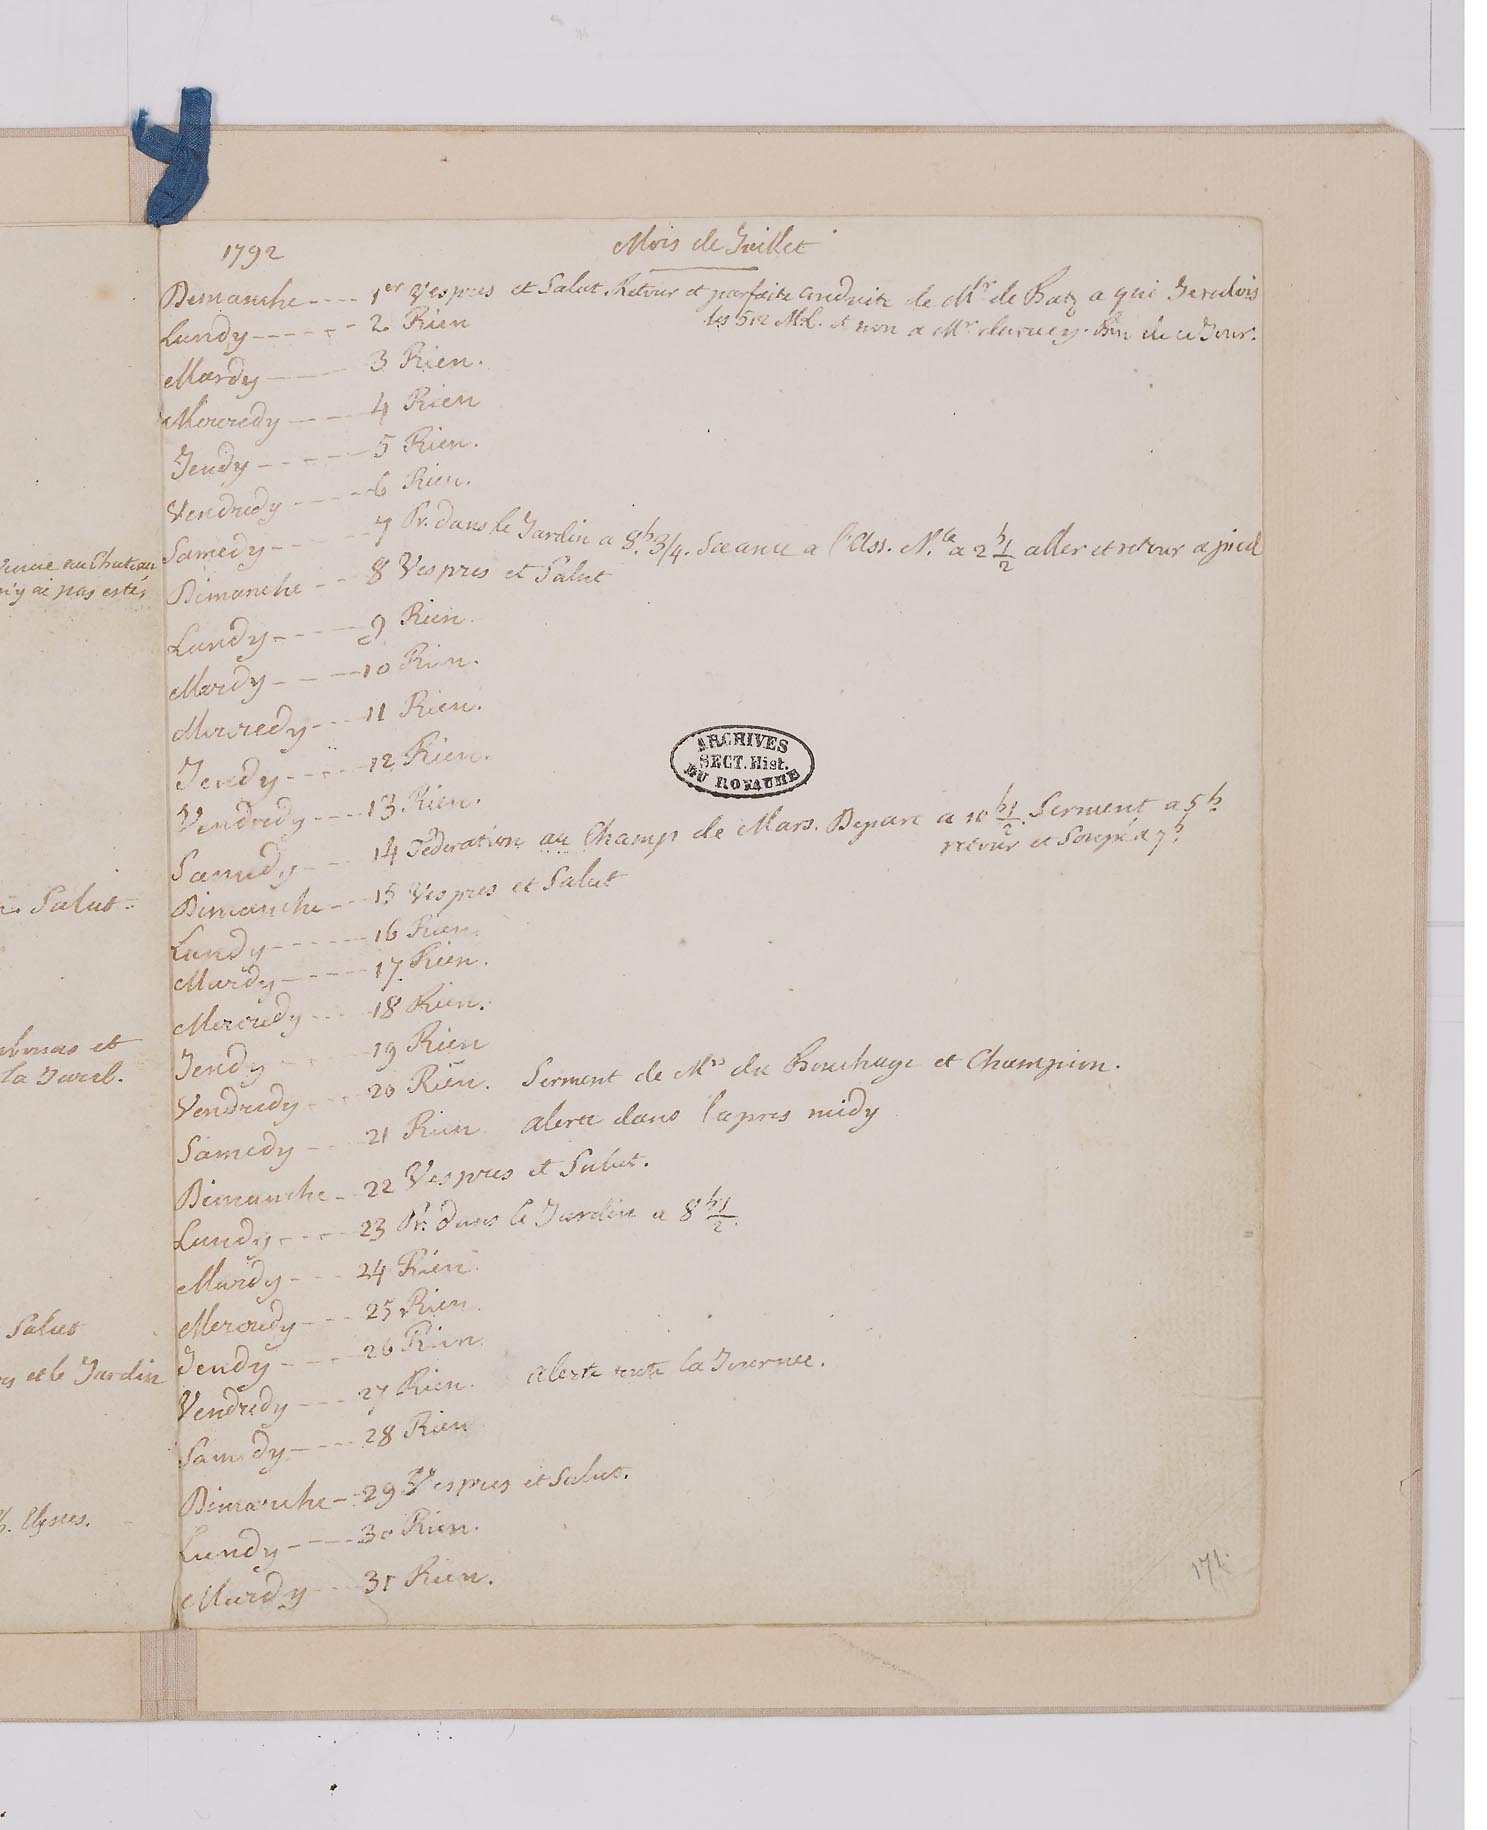 31 juillet 1792: Louis XVI tient son journal pour la dernière fois F2ZCTc1WgAAA1Yd?format=jpg&name=large